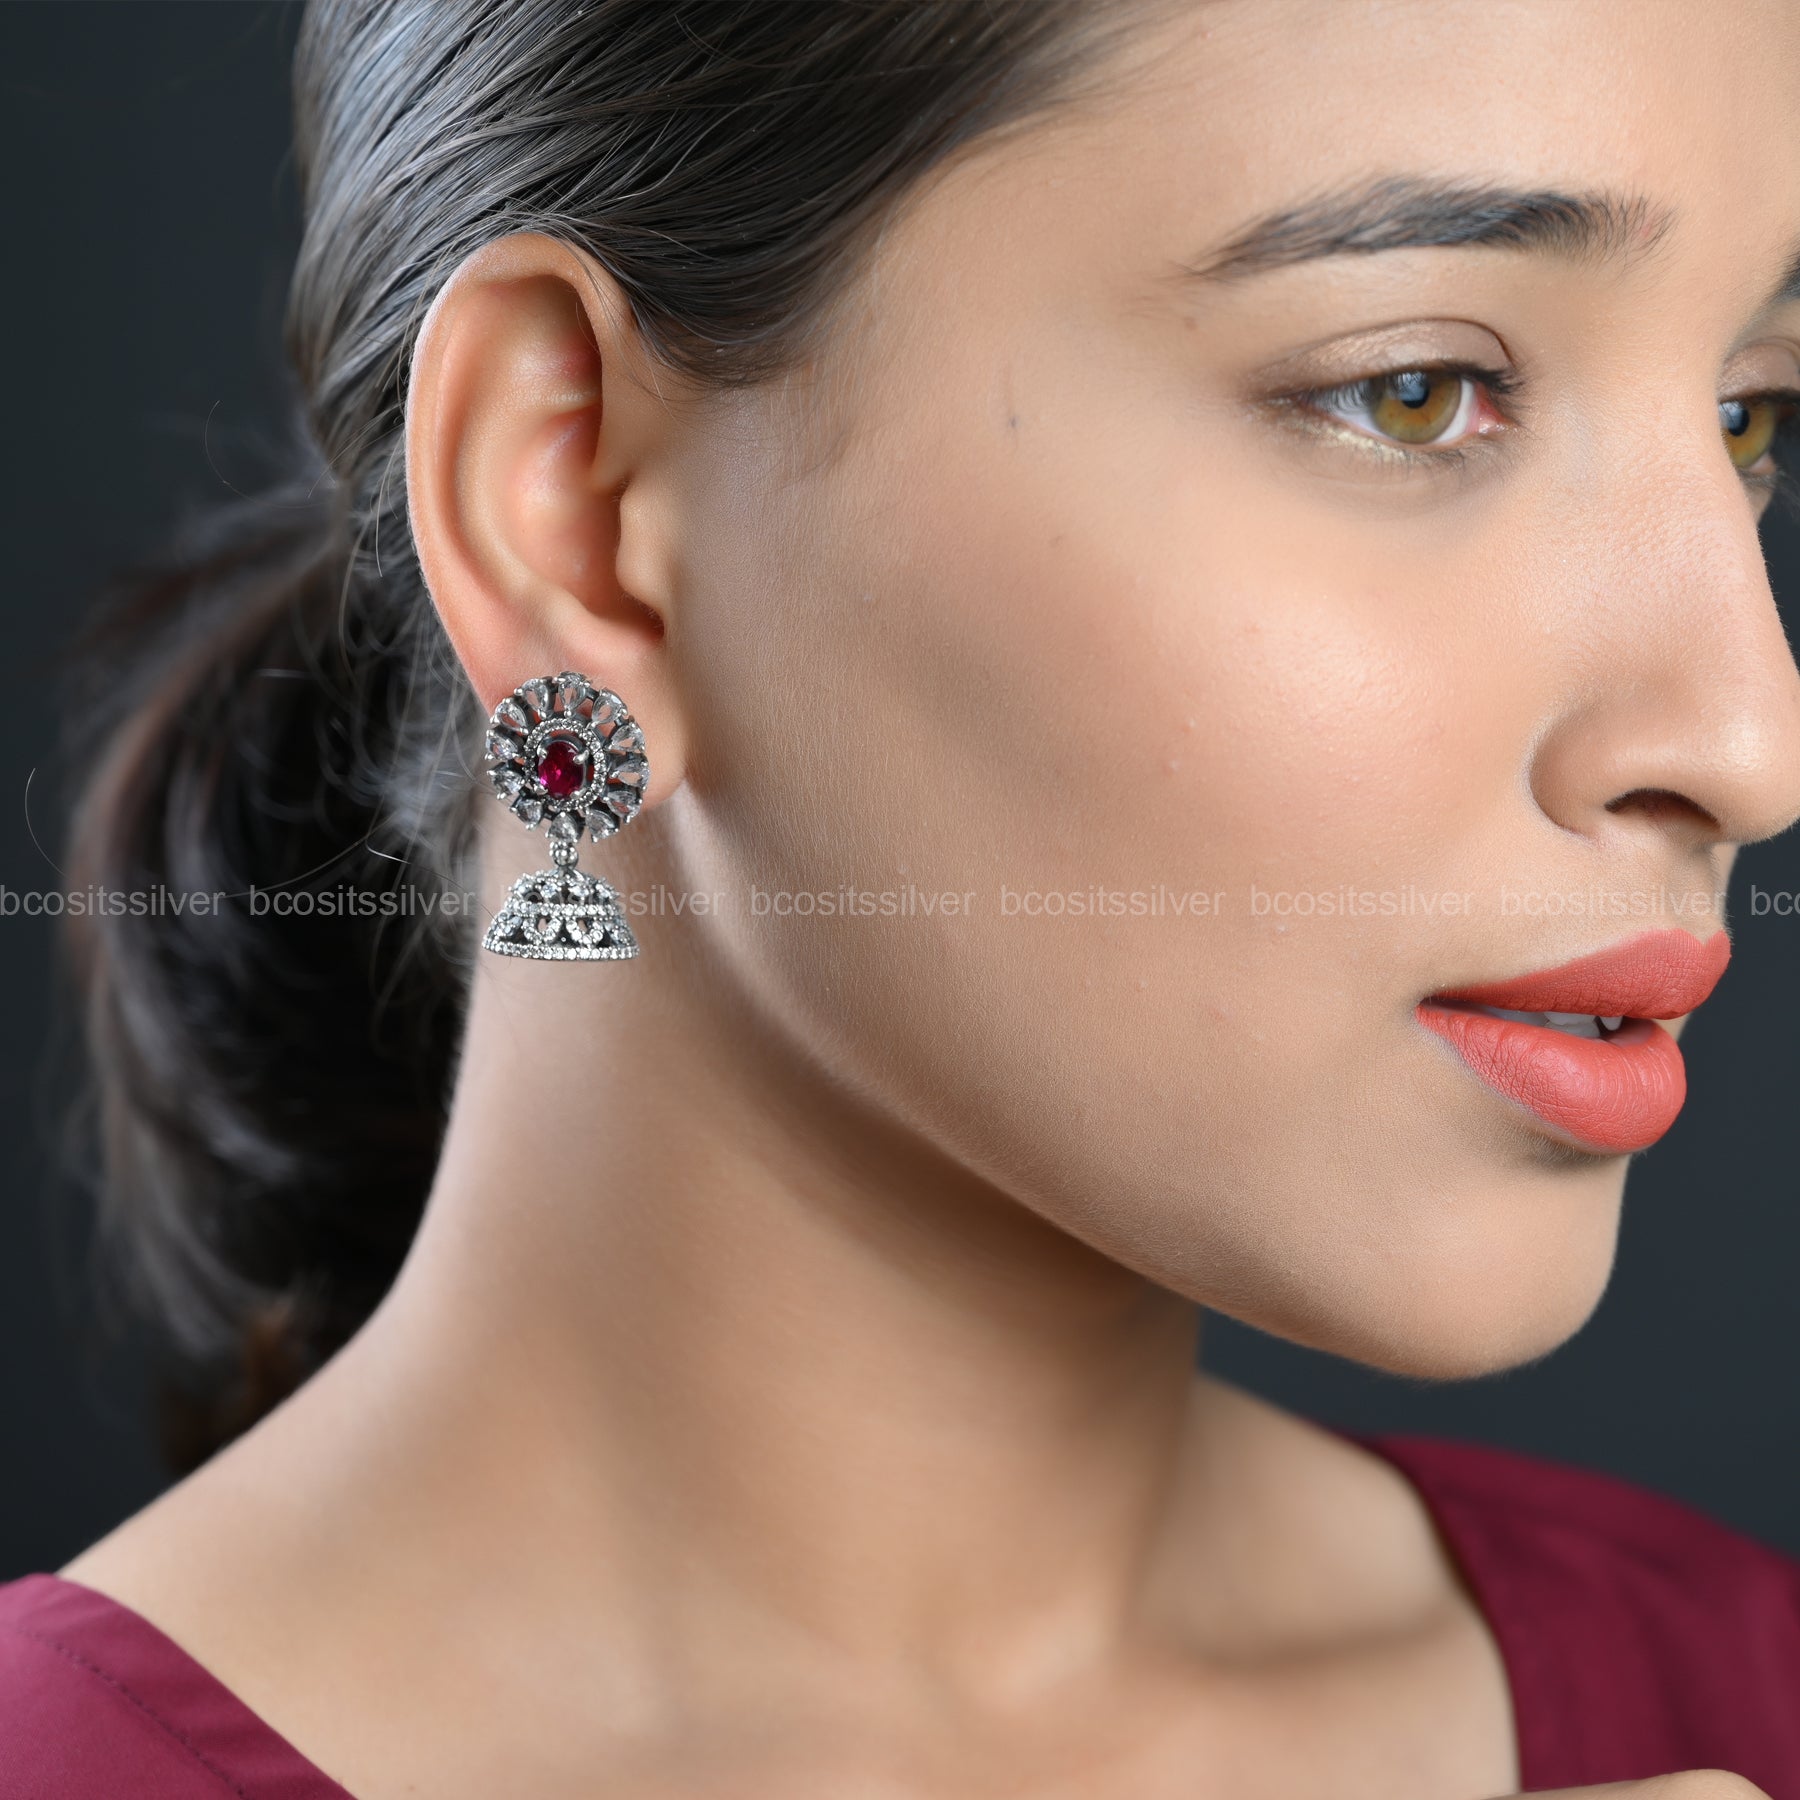 Silver Oxidized Earring - 159